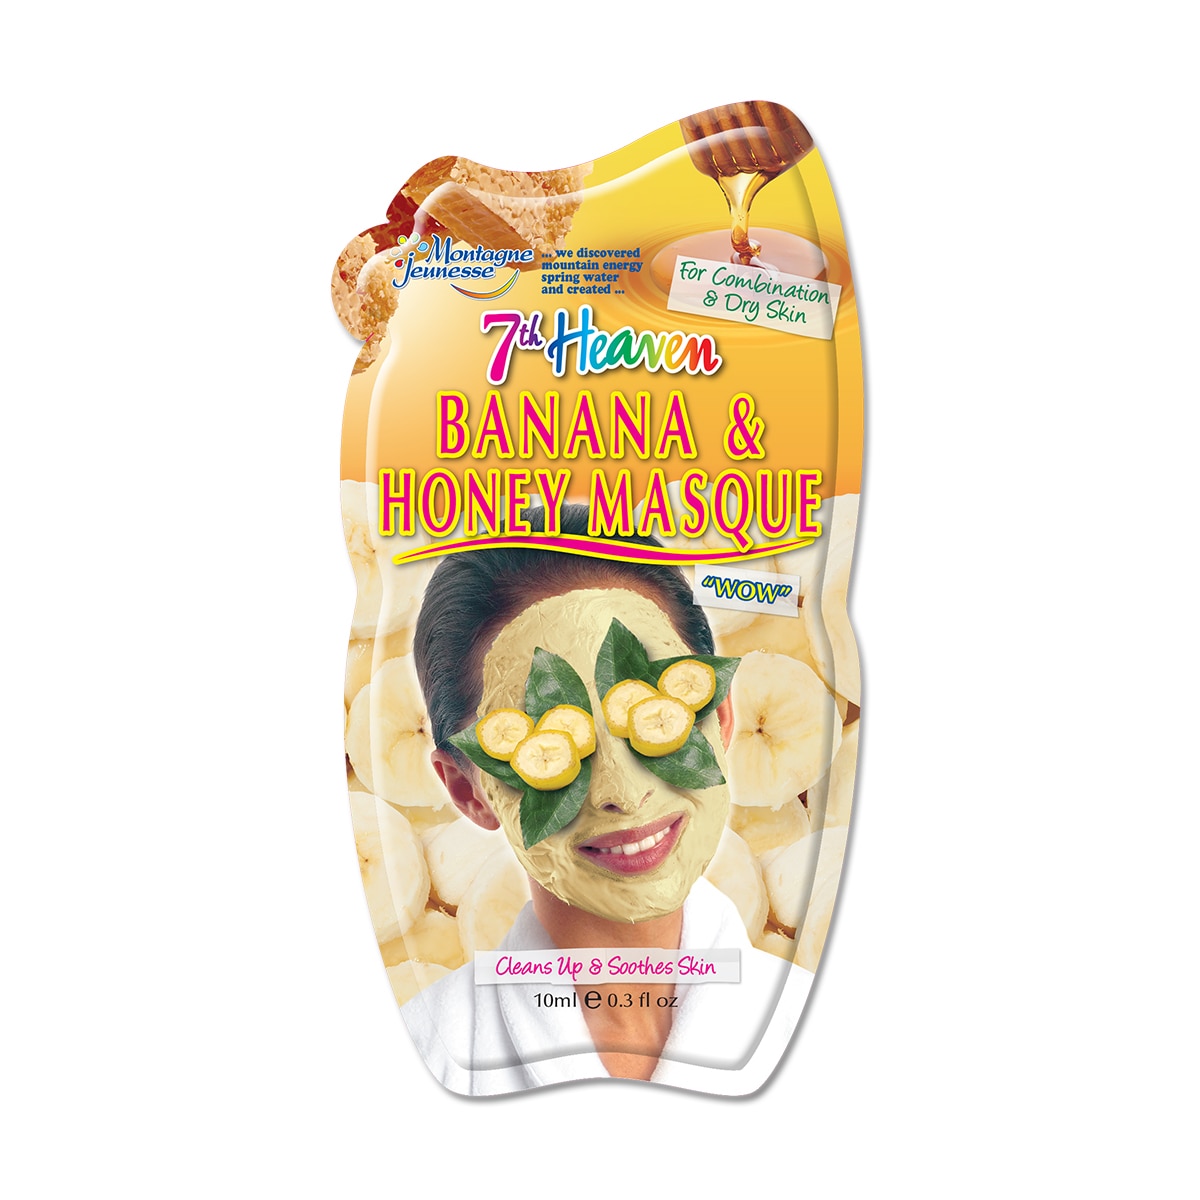 banana pentru ten gras)